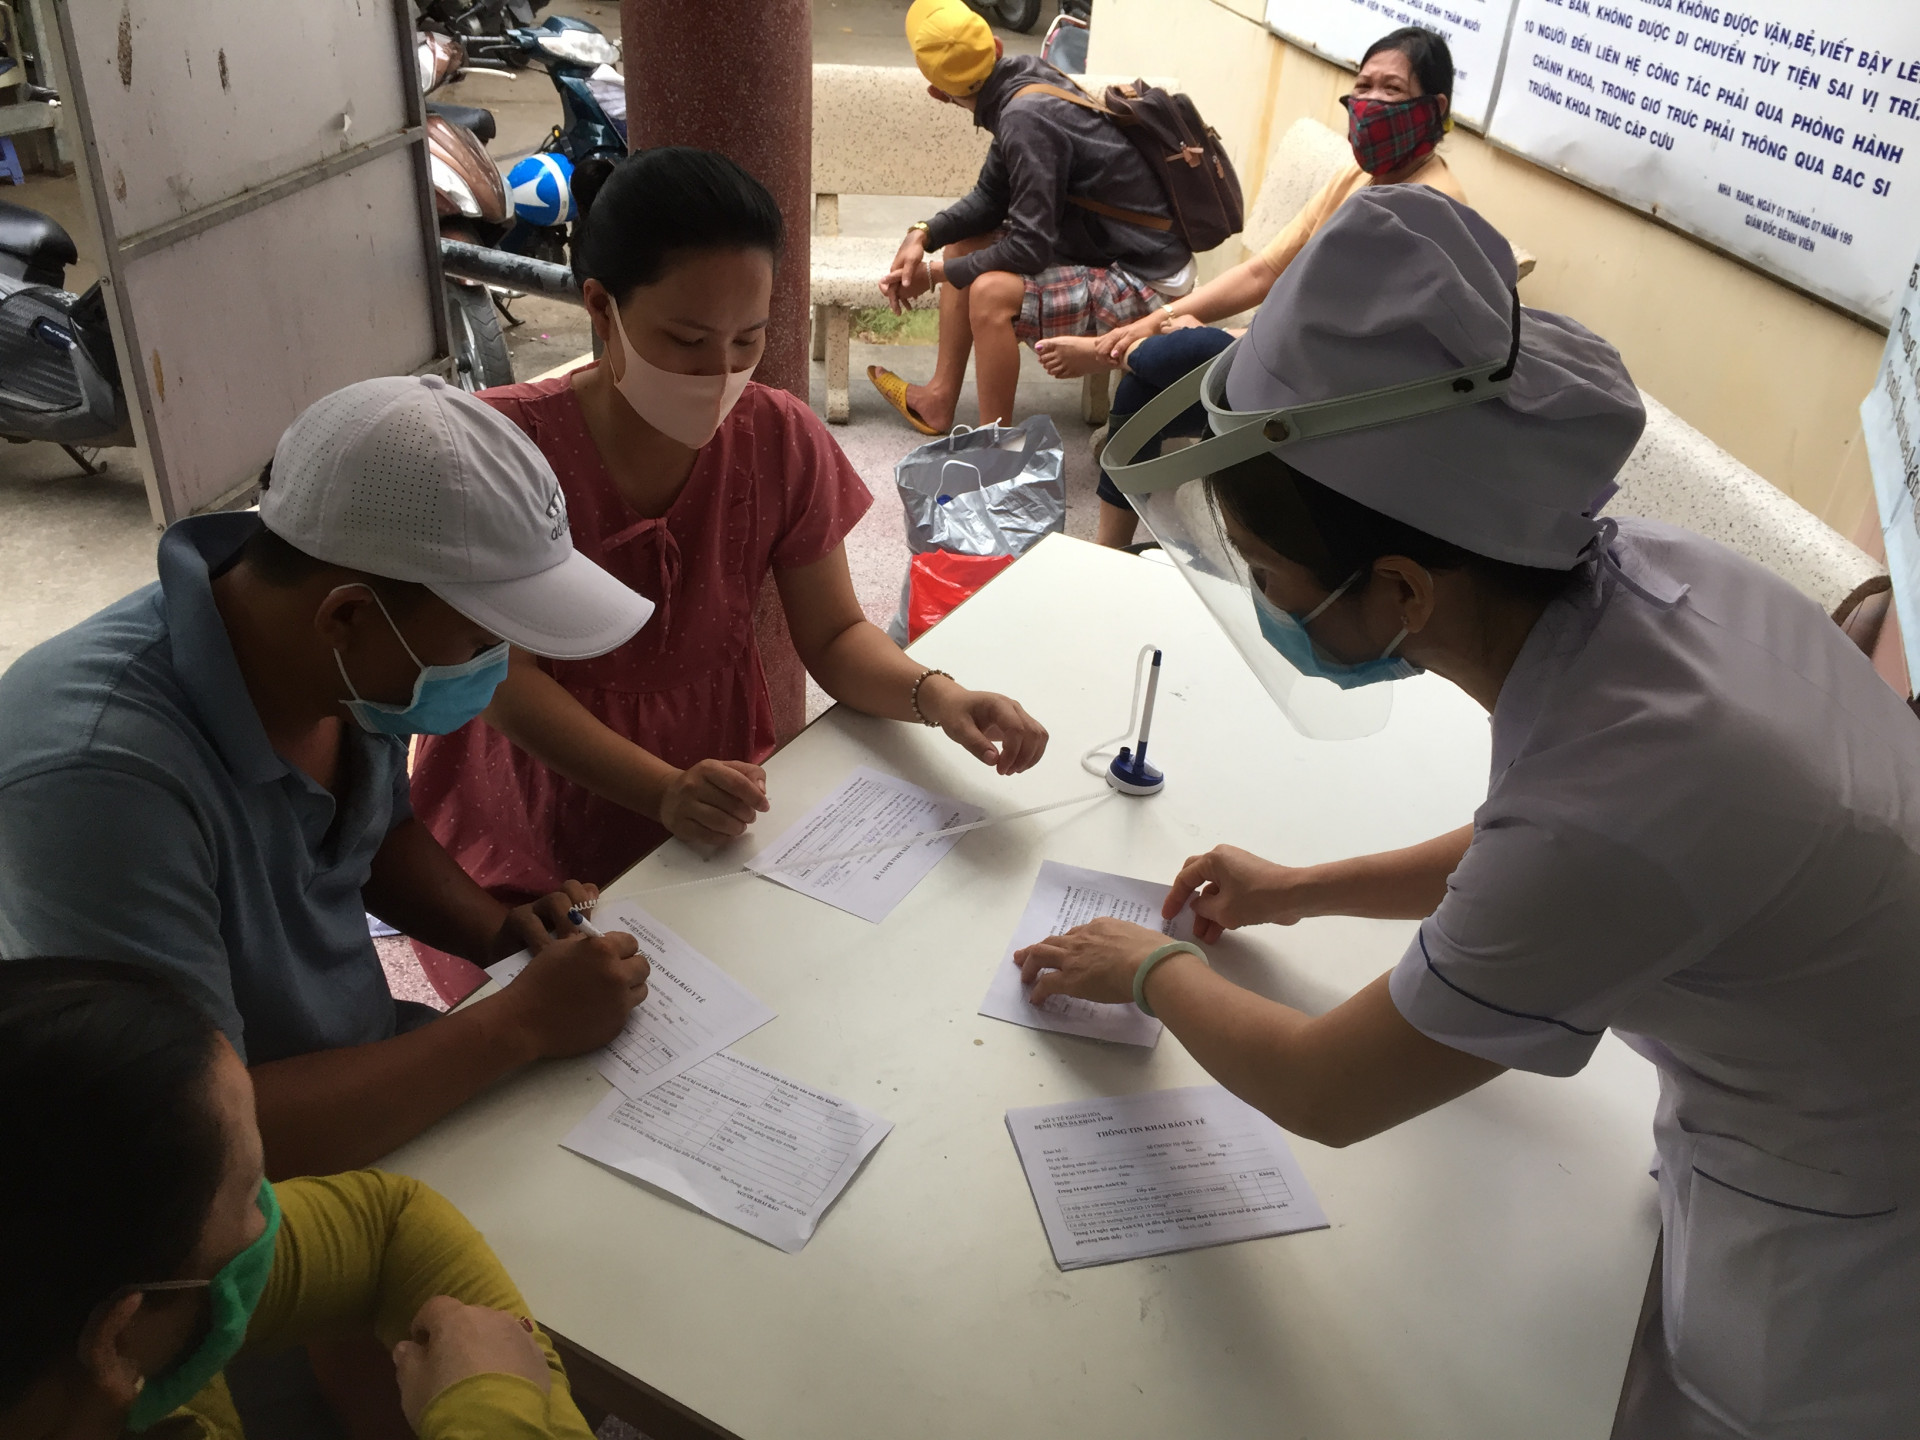 Hướng dẫn người đến khám khai báo y tế tại Bệnh viện Đa khoa tỉnh Khánh Hoà